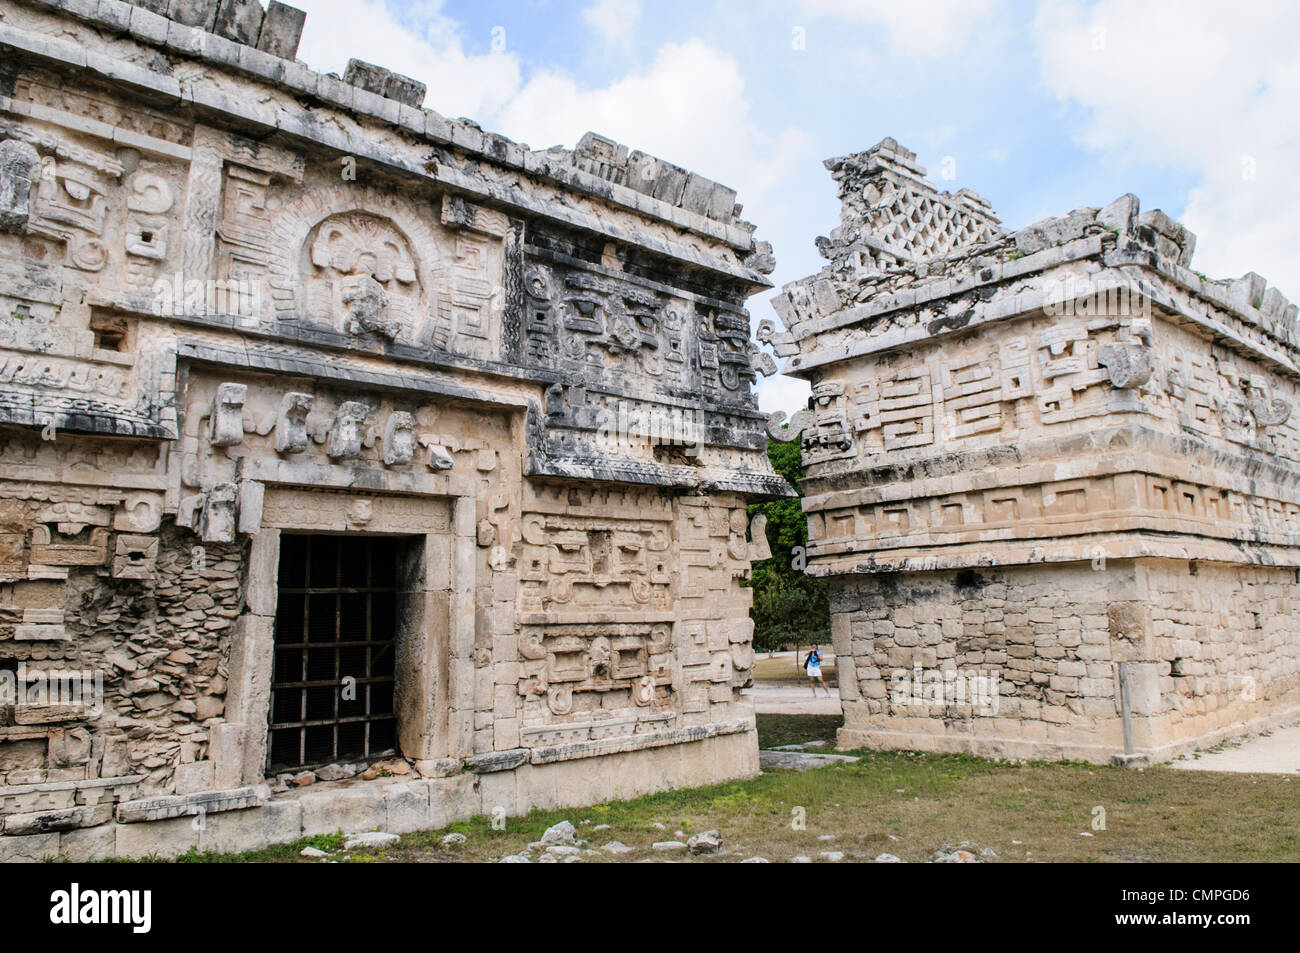 CHICHEN ITZA, Mexique - bâtiments richement décoré à Chichen Itza, un site archéologique précolombien au Yucatan, Mexique. Cet édifice est connu comme 'La Iglesia' et est dans le quartier de Las Monjas complexe de bâtiments. Banque D'Images